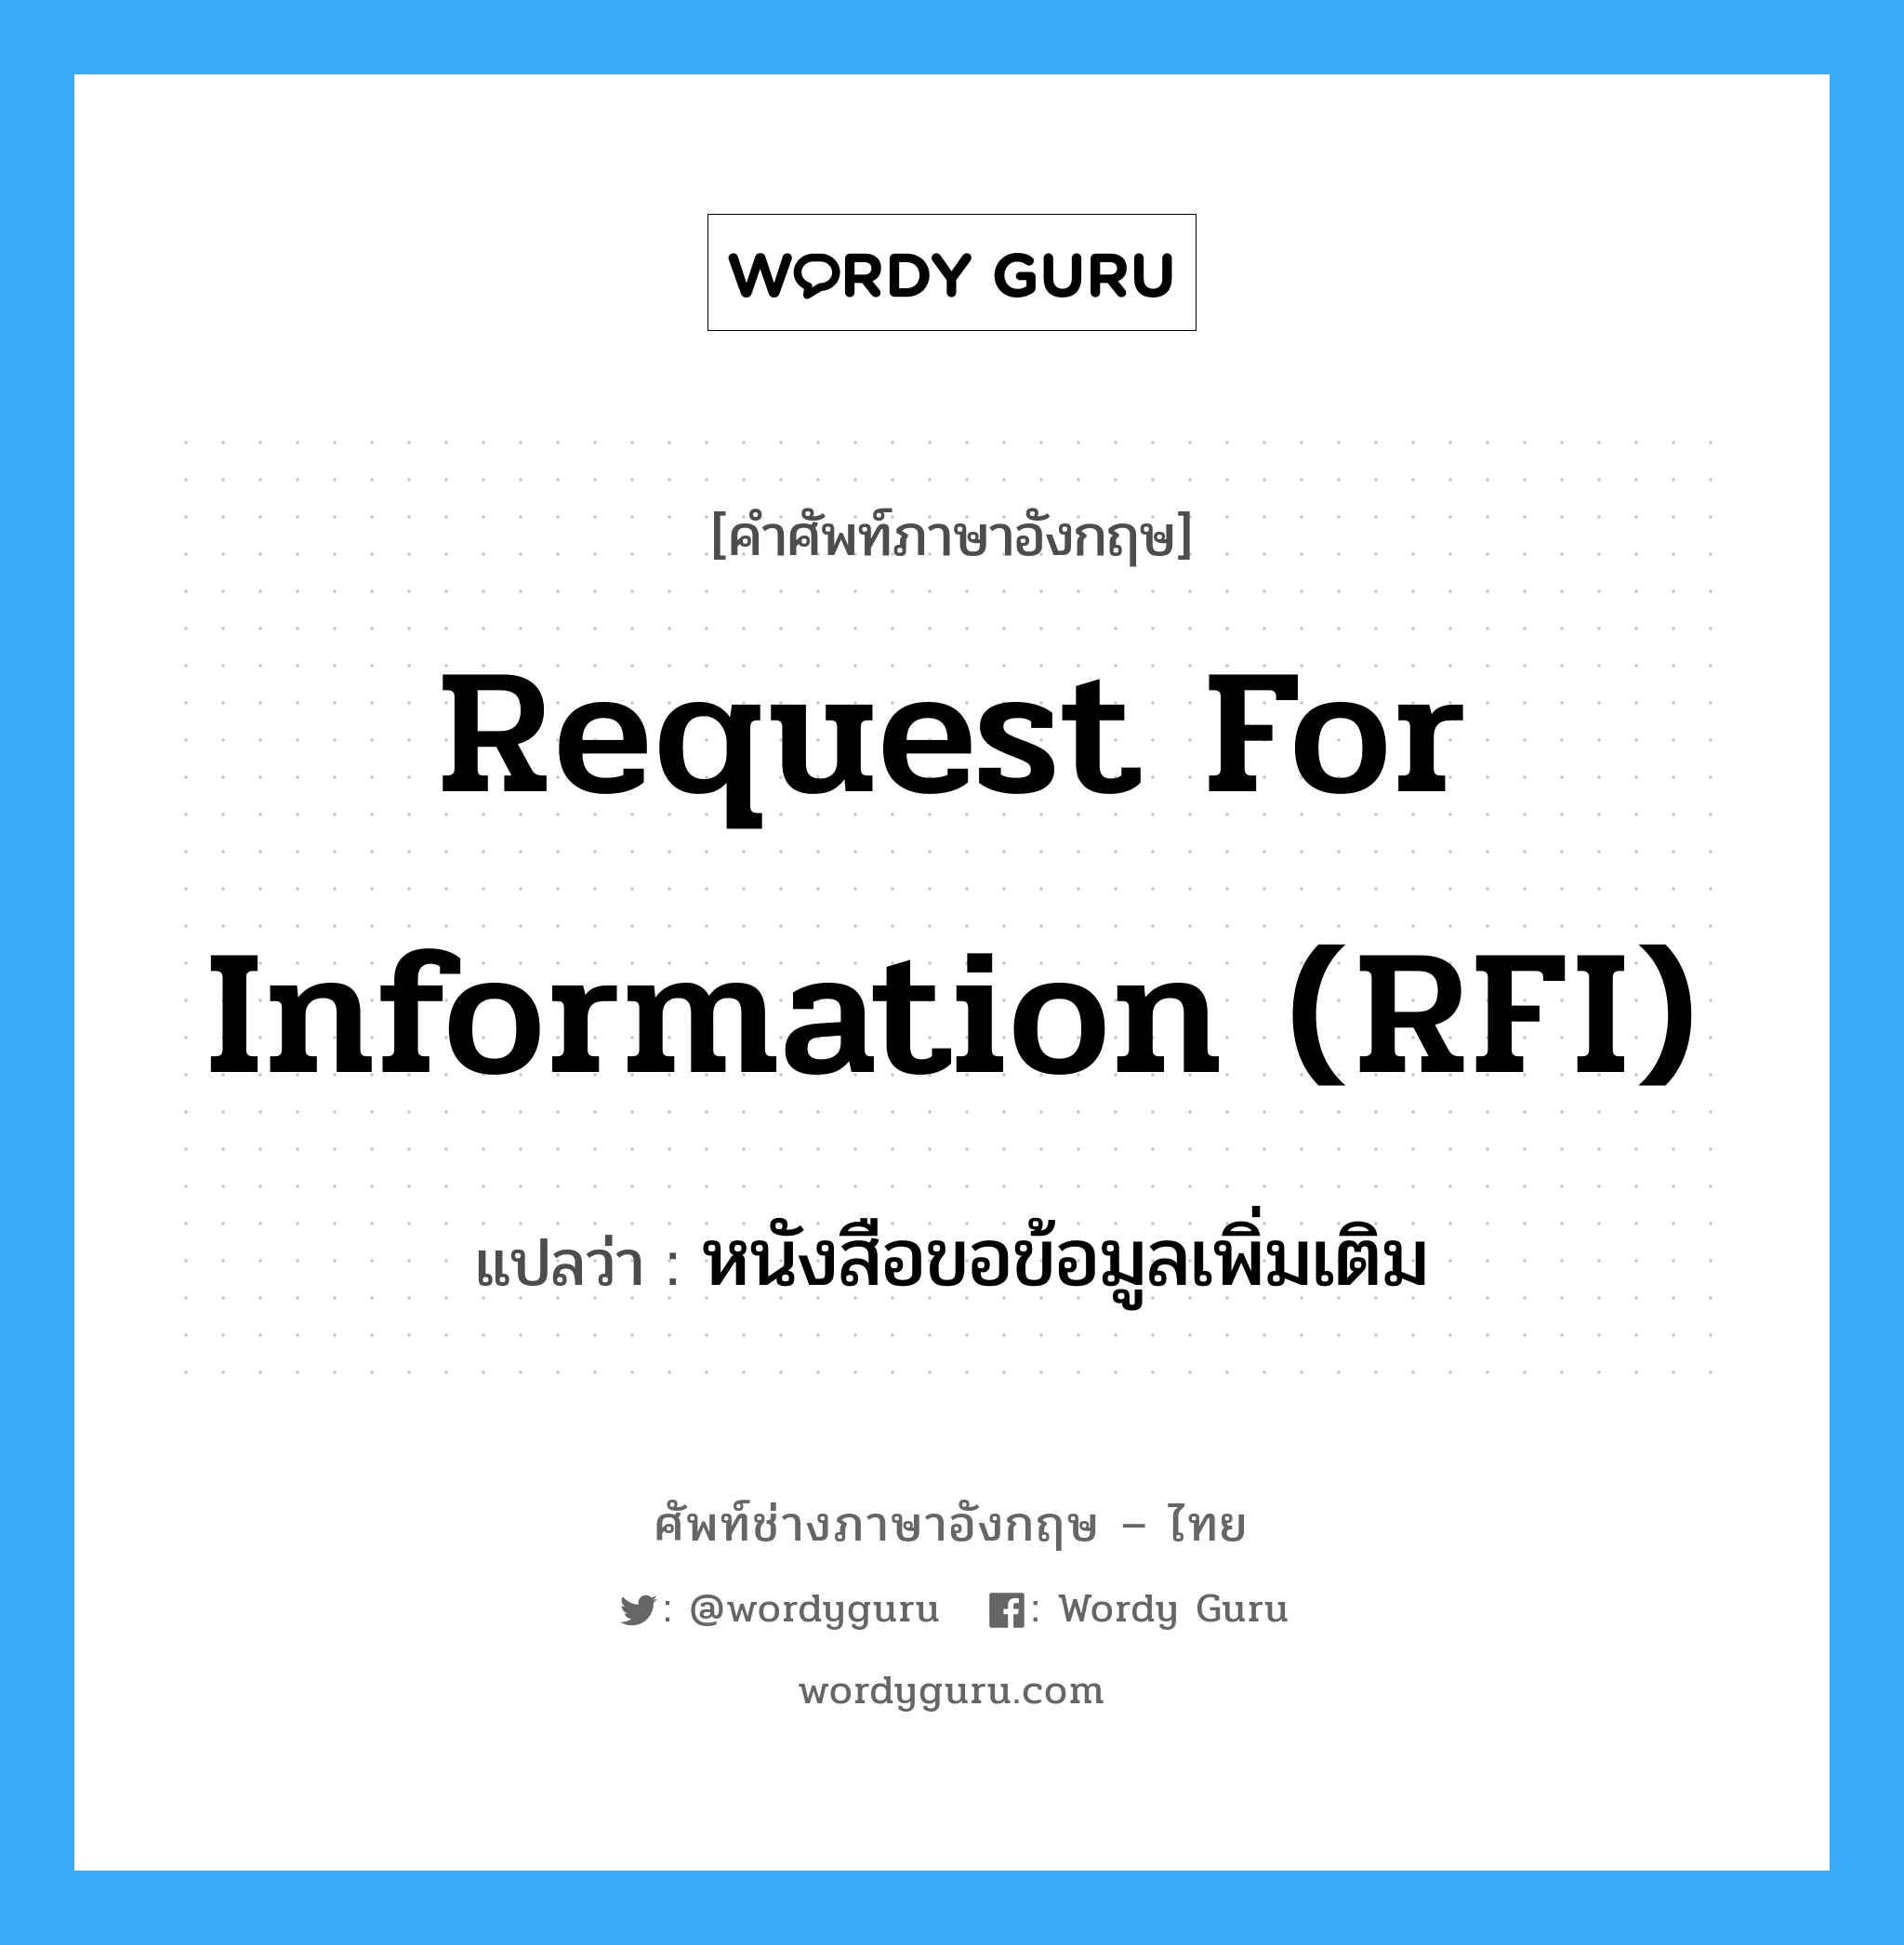 Request for Information (RFI) แปลว่า?, คำศัพท์ช่างภาษาอังกฤษ - ไทย Request for Information (RFI) คำศัพท์ภาษาอังกฤษ Request for Information (RFI) แปลว่า หนังสือขอข้อมูลเพิ่มเติม